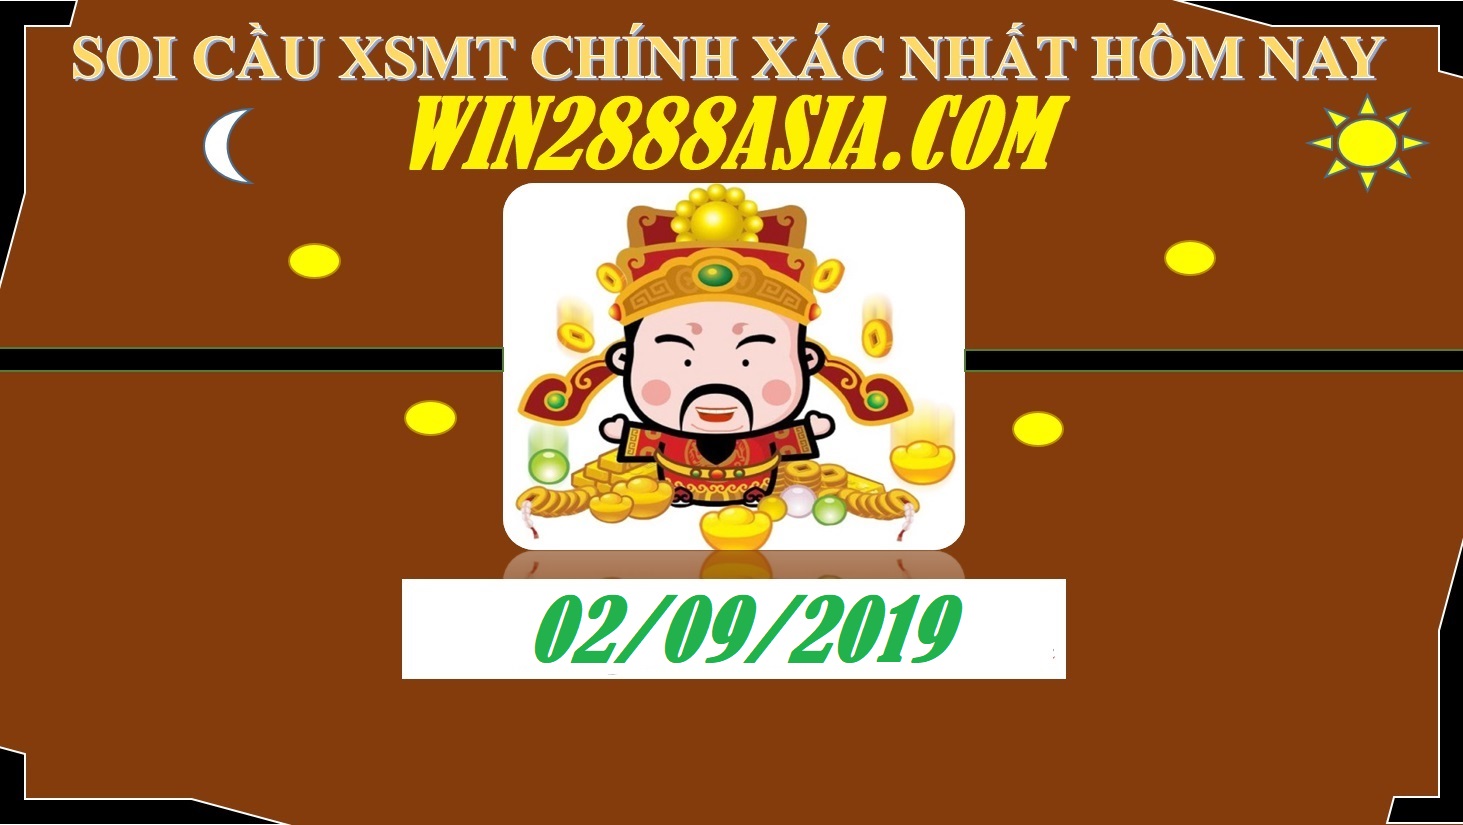 Soi cầu XSMT 2-9-2019 Win2888